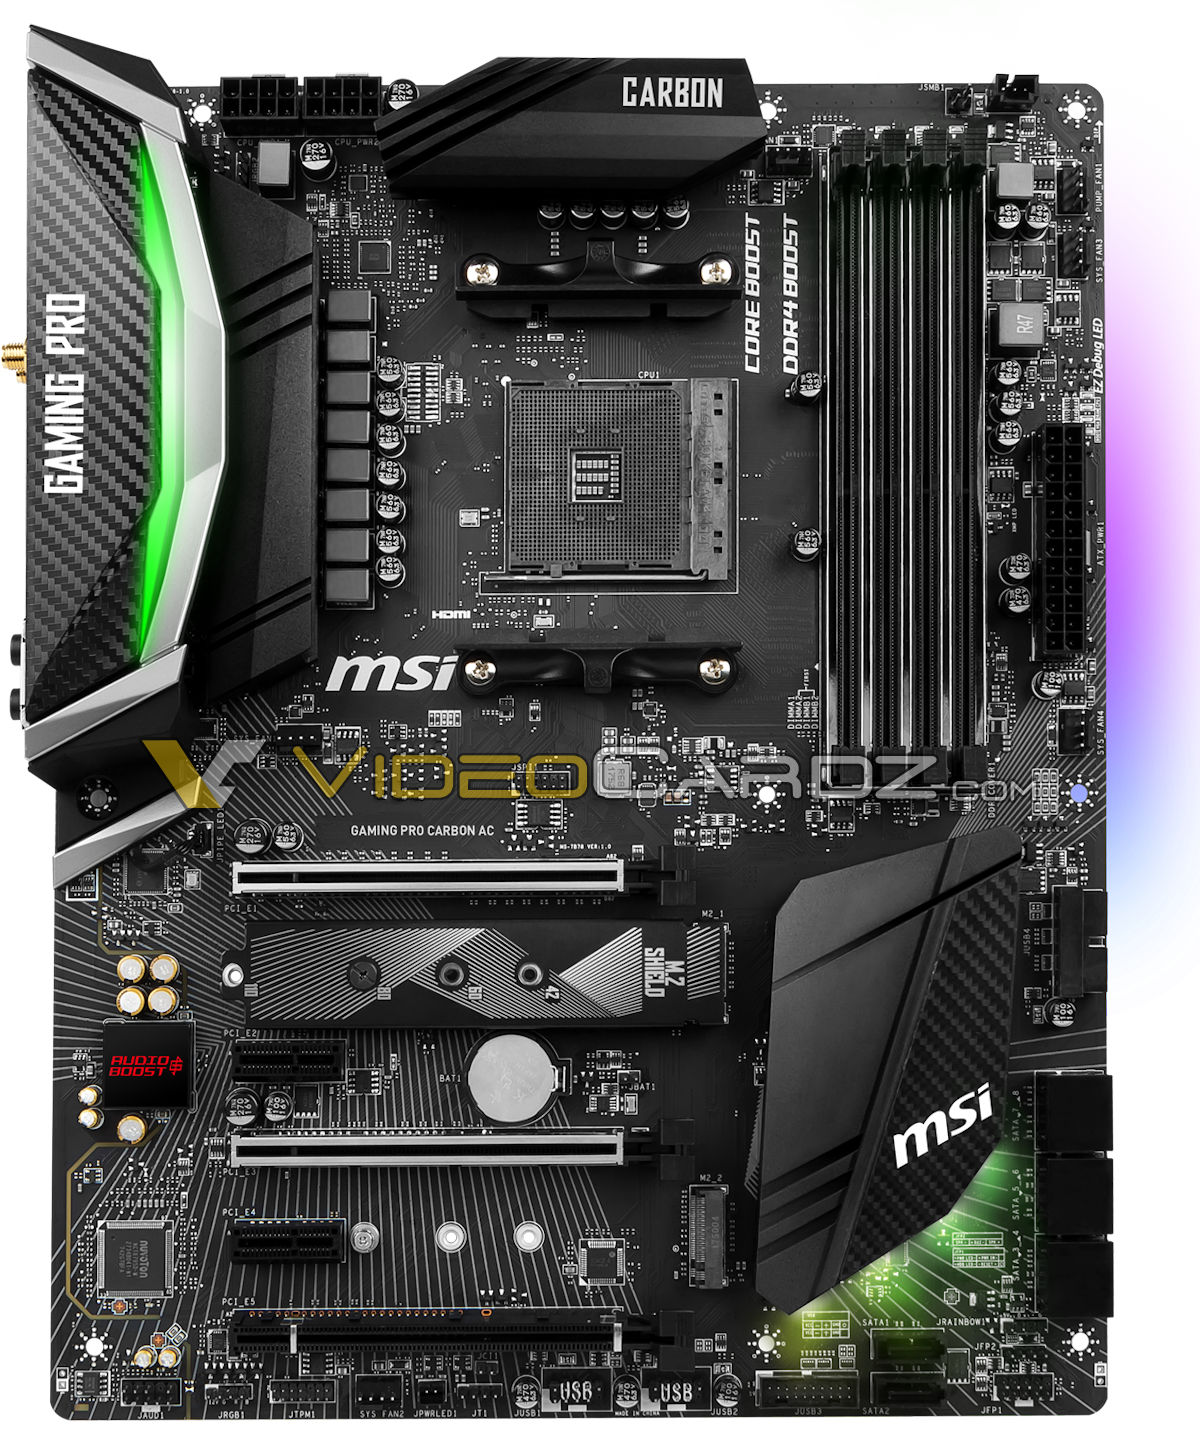 Immagine pubblicata in relazione al seguente contenuto: Foto della motherboard MSI X470 Gaming Pro Carbon AC per CPU Ryzen 2000 | Nome immagine: news28089_MSI-X470-Gaming-Pro-Carbon-AC_2.jpg